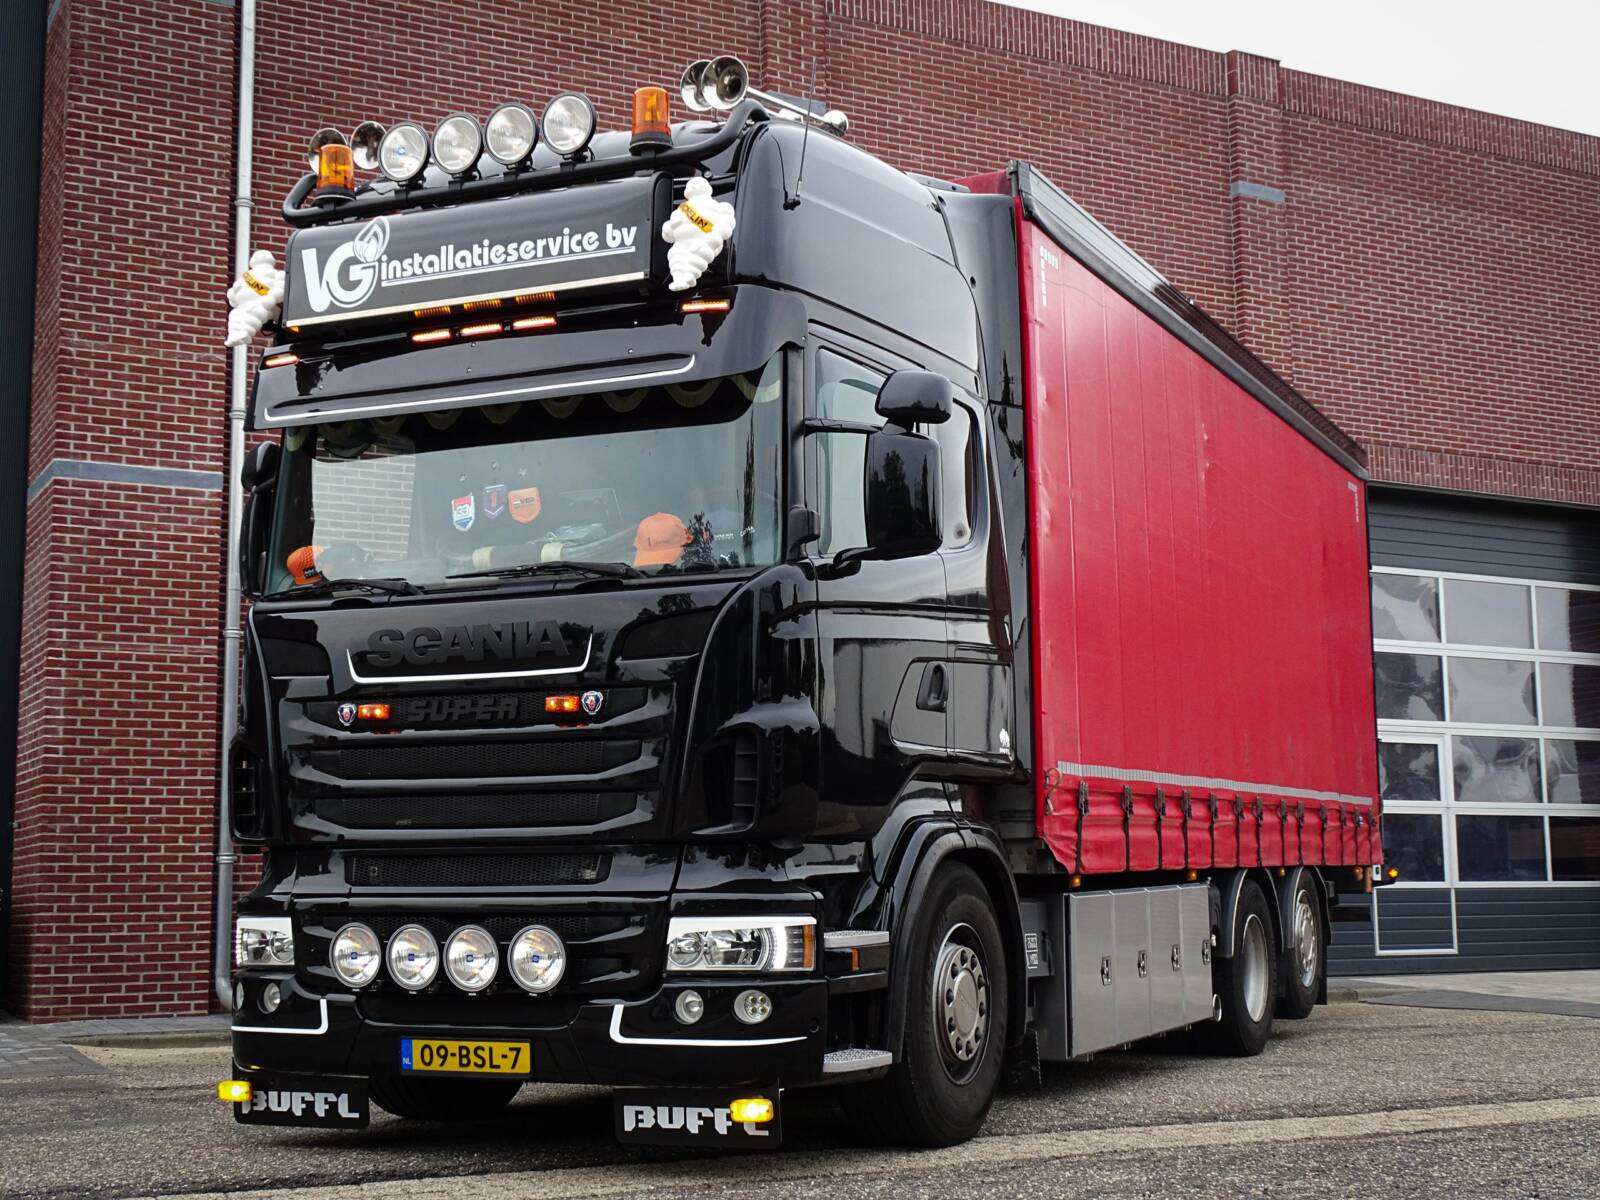 Scania R500 | VG installatie service